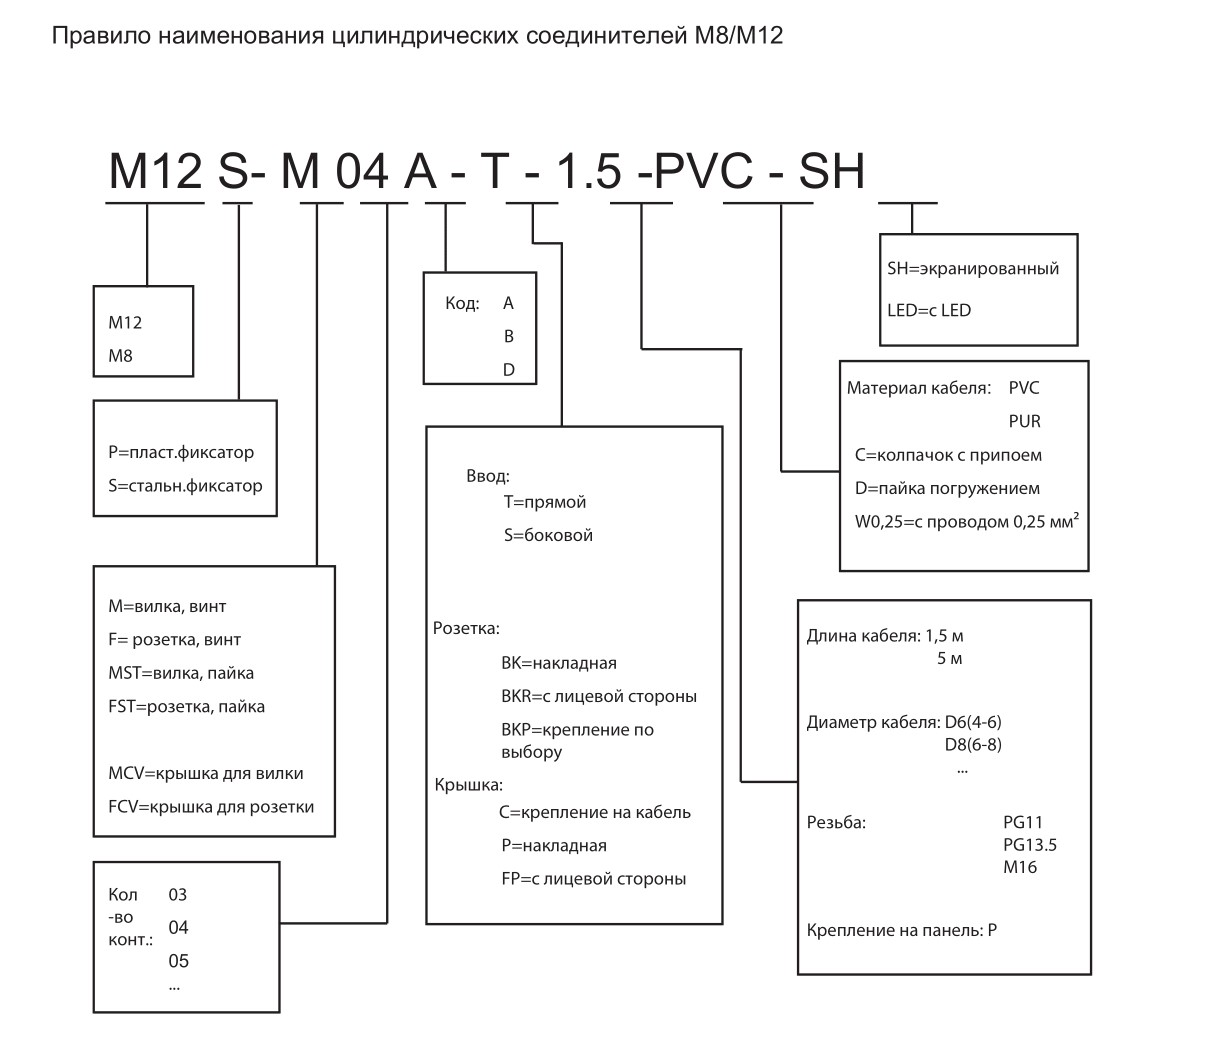 Цилиндрический соединитель-вилка M12P-M03A-S-D8 1630035113102: Структура обозначения